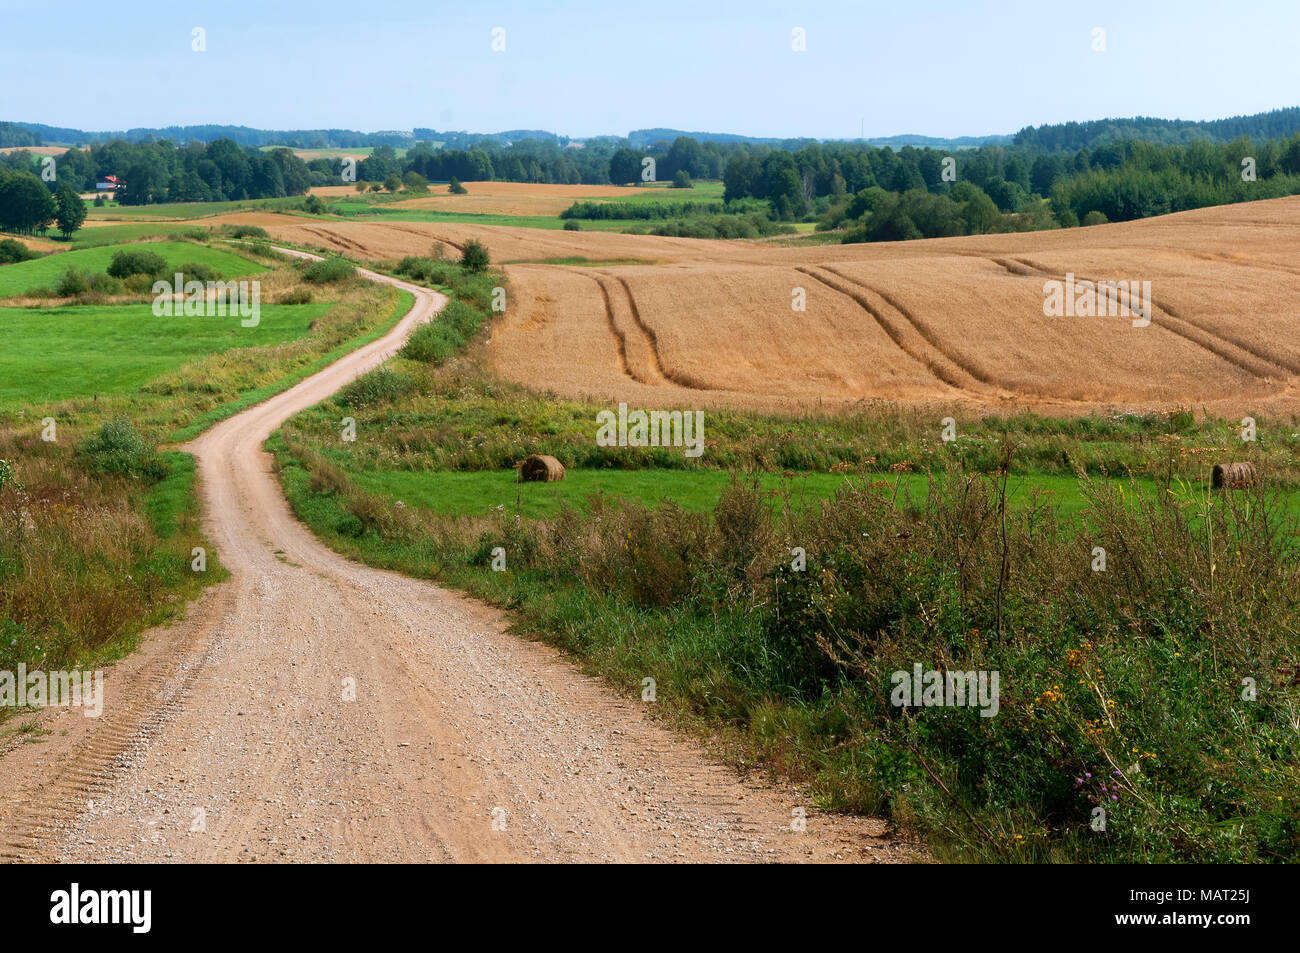 Les terres agricoles, longue route en champ labouré, chemin de terre au milieu du champ Banque D'Images